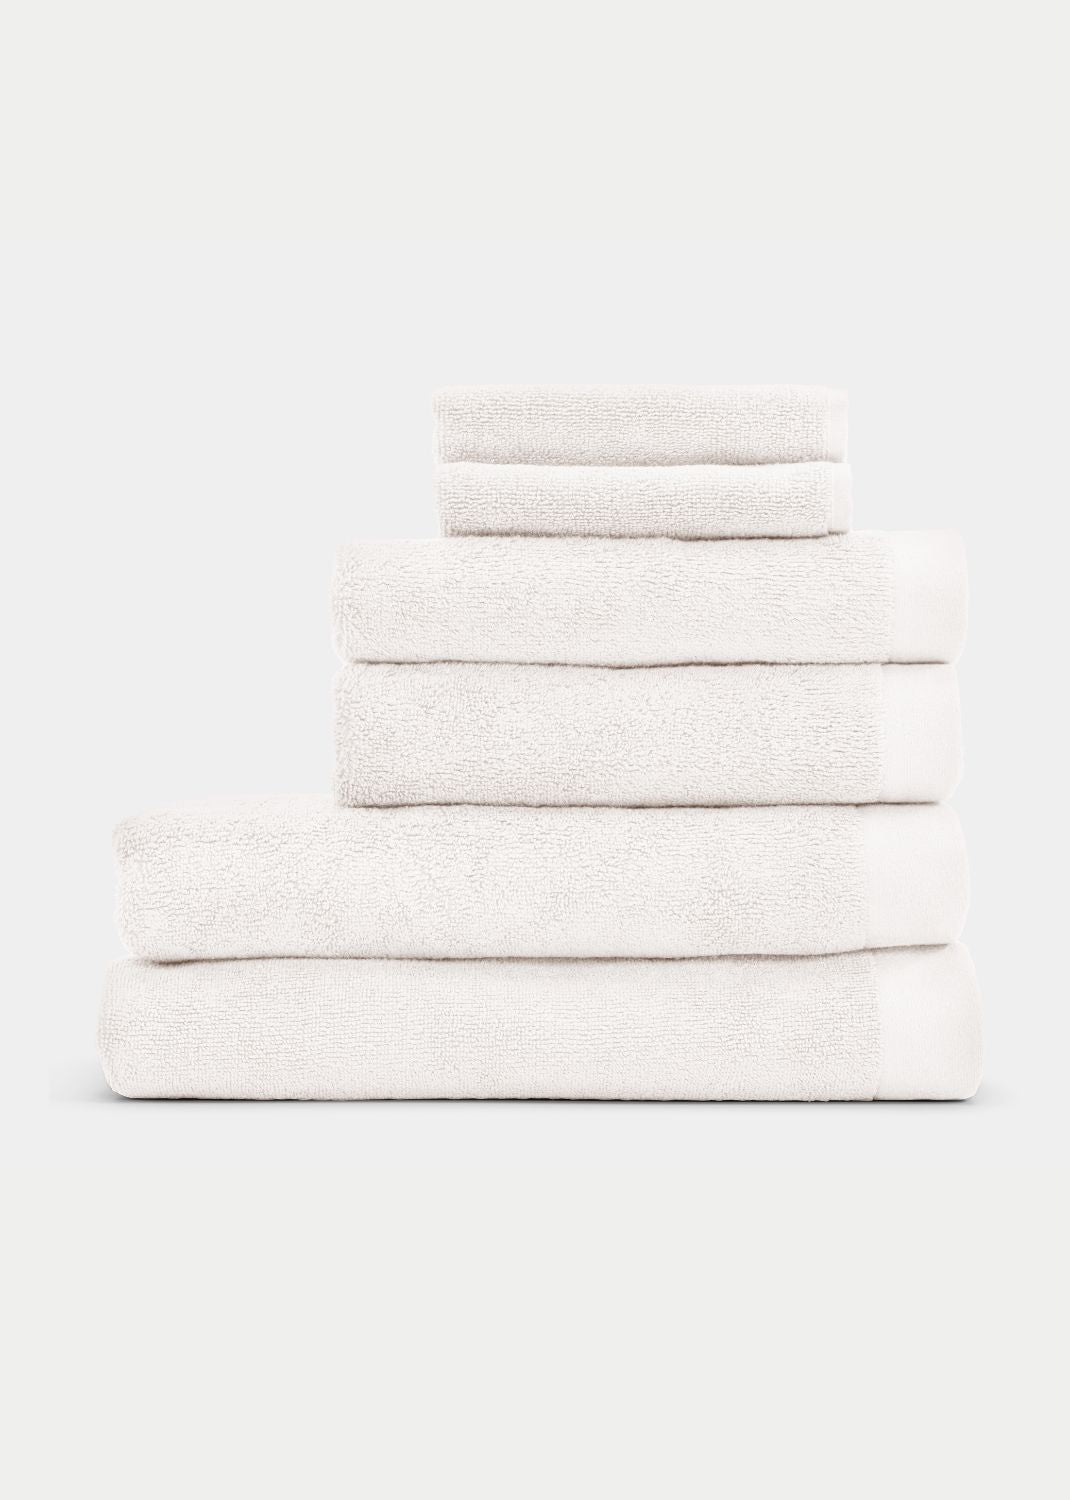 Handtuch Baumwolle Weiß 30 x 50 cm